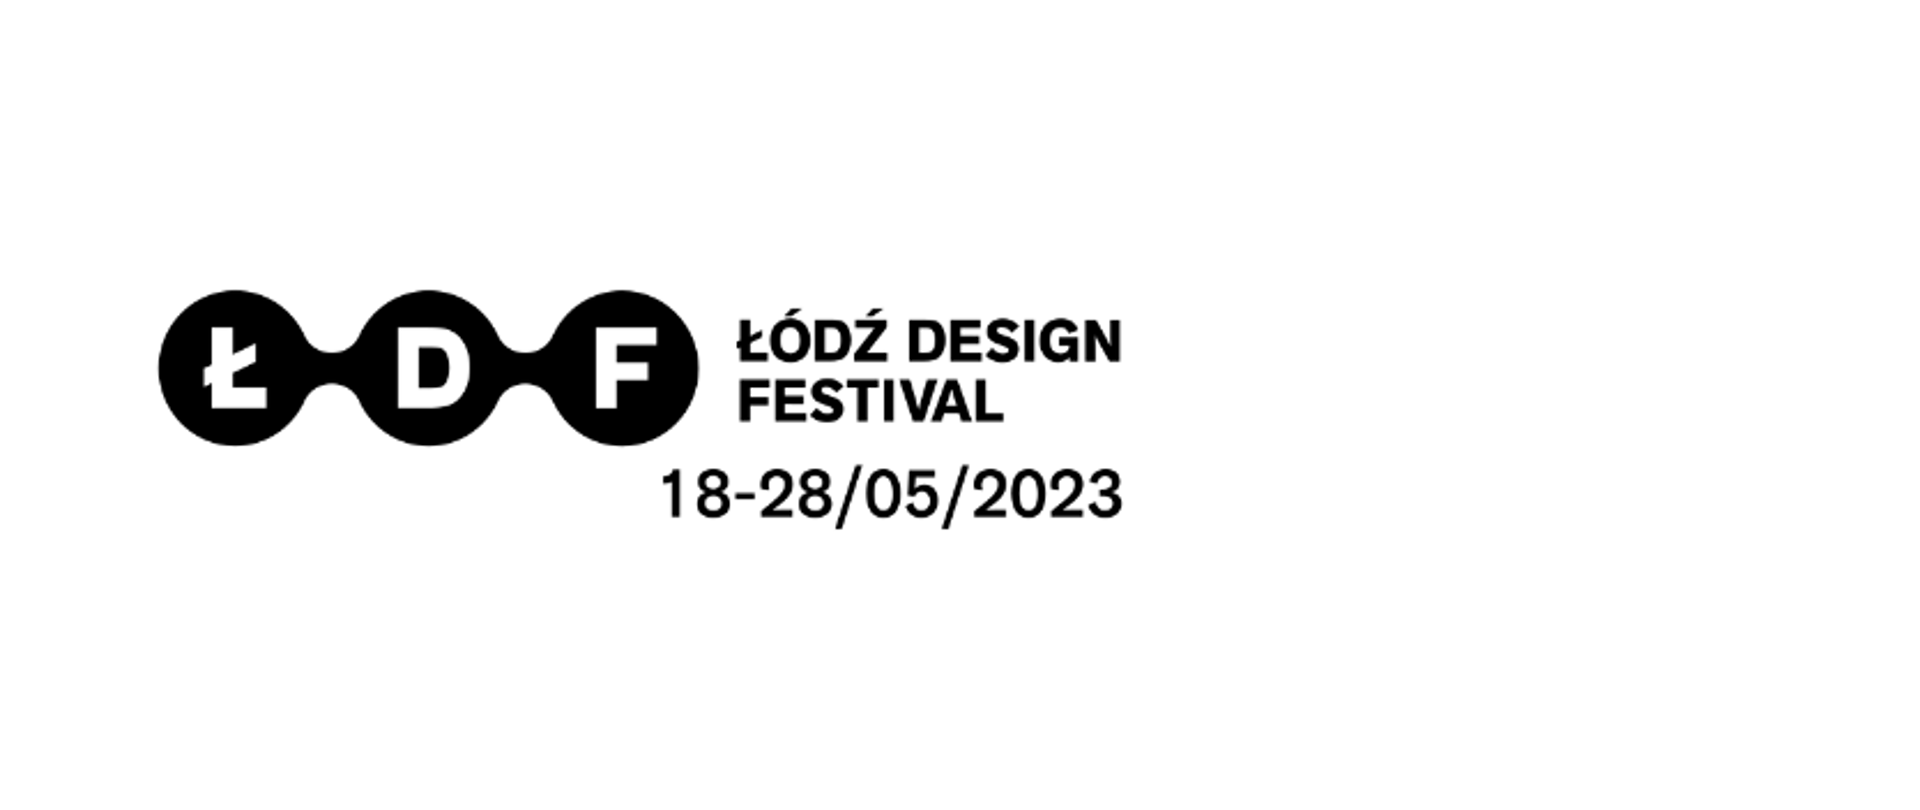 Monochromatyczny logotyp Łódź Design Festiwal. W czarnych, połączone ze sobą, kołach białe litery Ł, D, F. Po prawej stronie tekst w czarnym kolorze: Łódź Design Festival, 18-28/05/2023